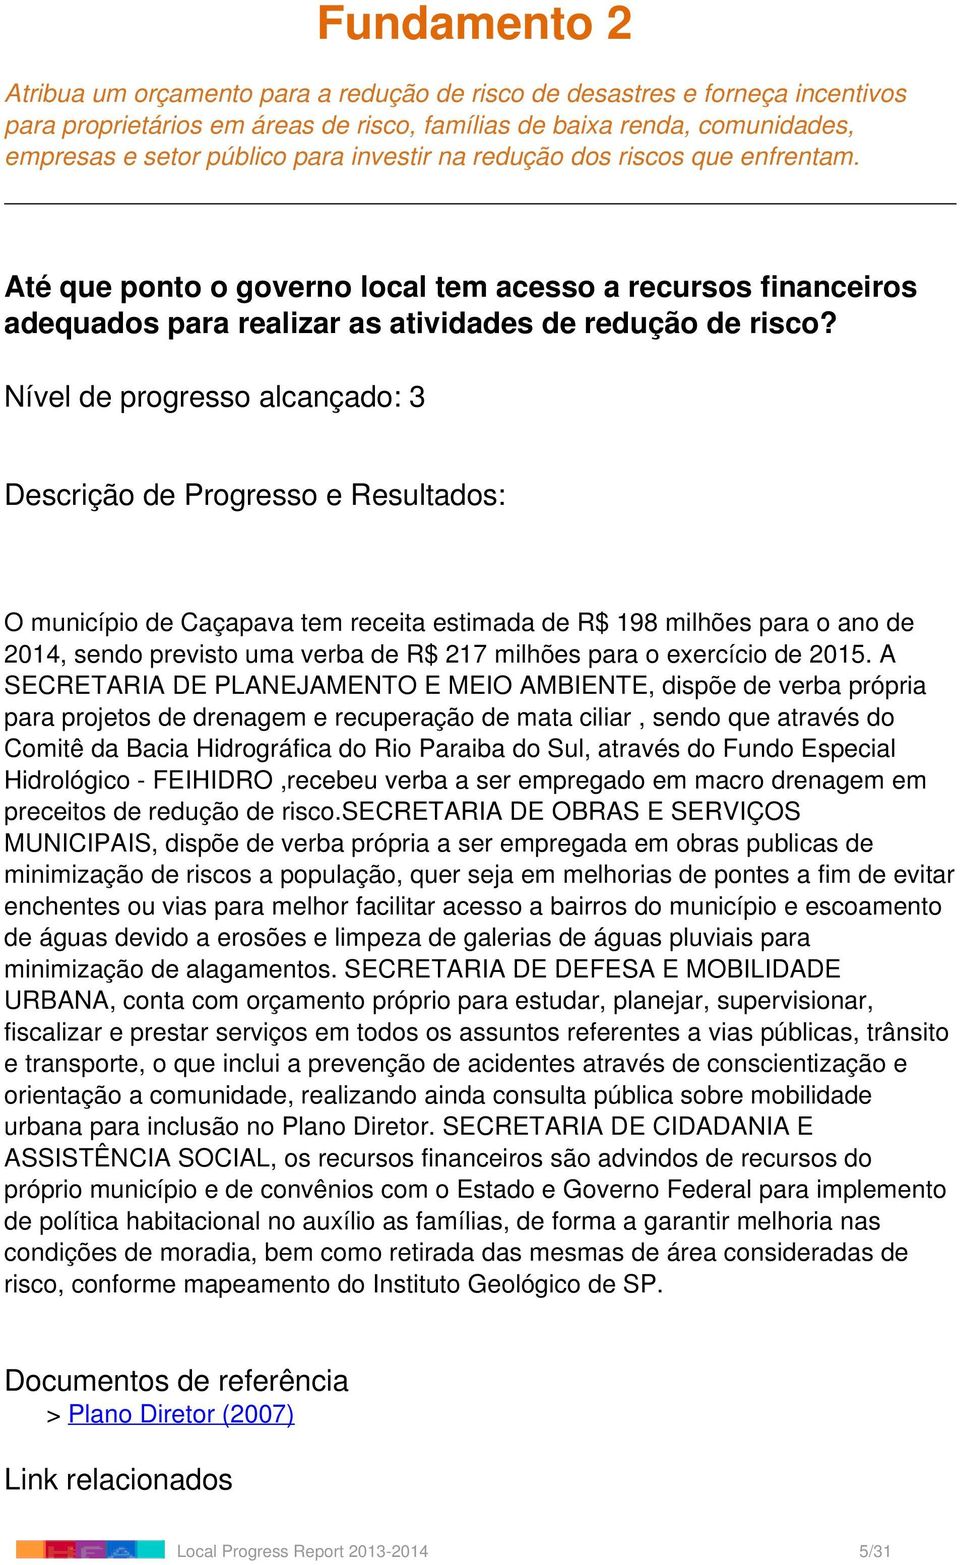 O município de Caçapava tem receita estimada de R$ 198 milhões para o ano de 2014, sendo previsto uma verba de R$ 217 milhões para o exercício de 2015.